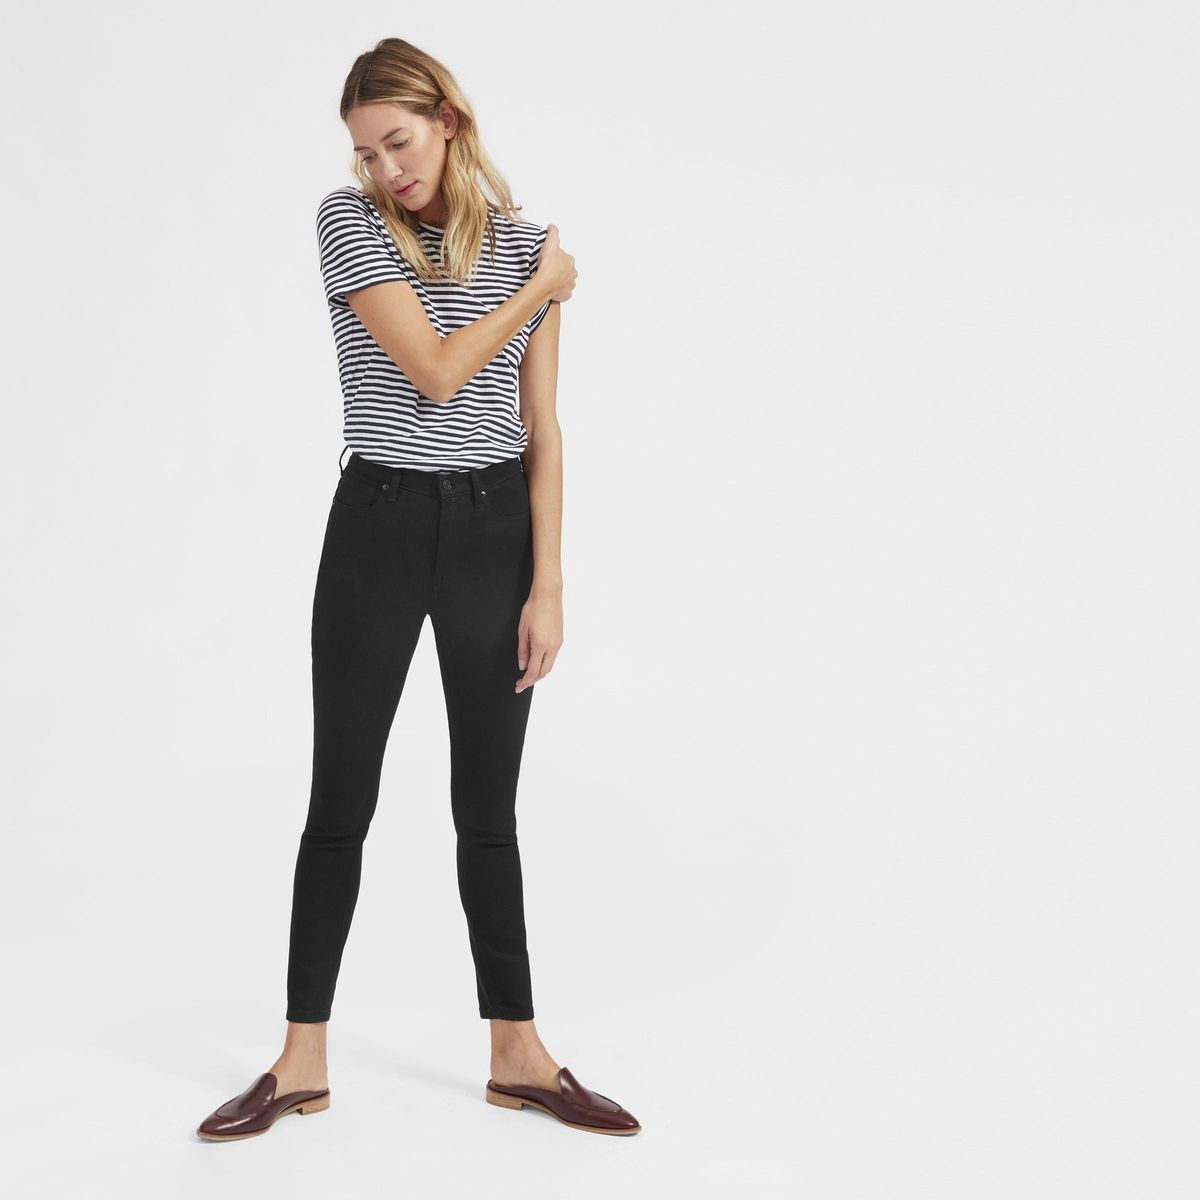 I jeans skinny perfetti di Everlane sono in vendita a $ 50